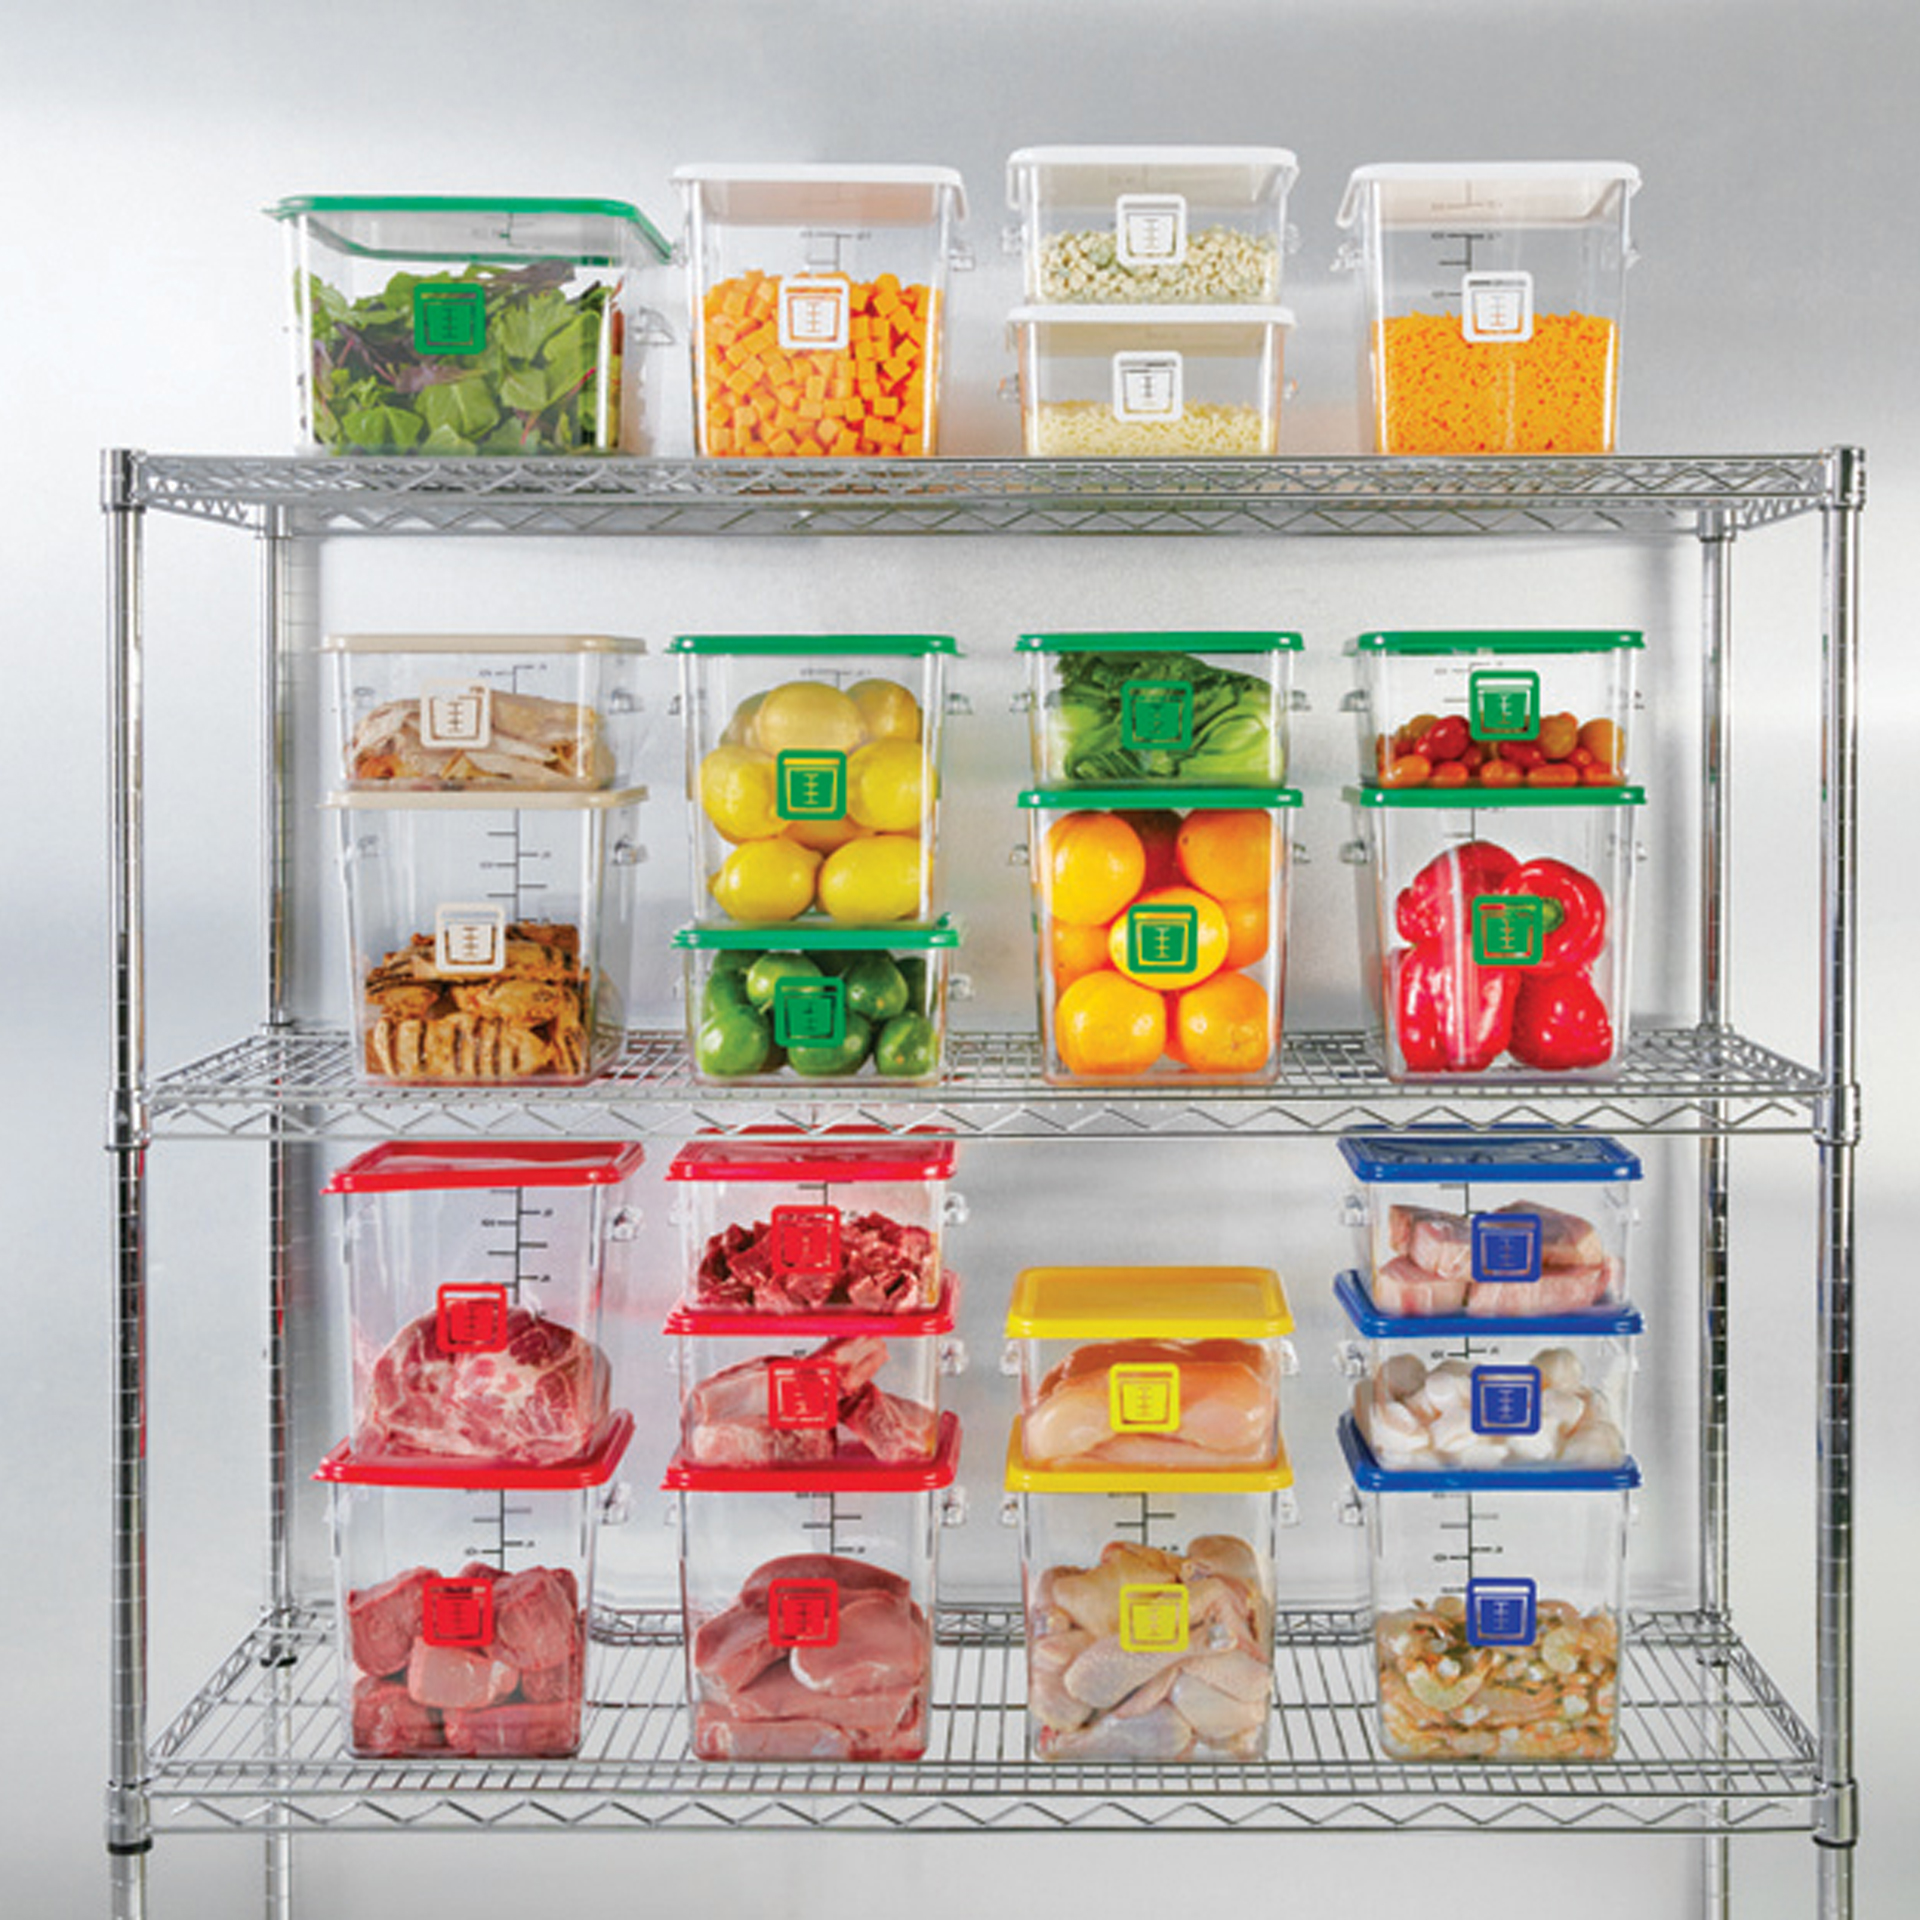 กล่องเก็บวัตถุดิบอาหารสี่เหลี่ยม Color-Coded Square Container Clear ขนาด 12 qt สีน้ำตาล